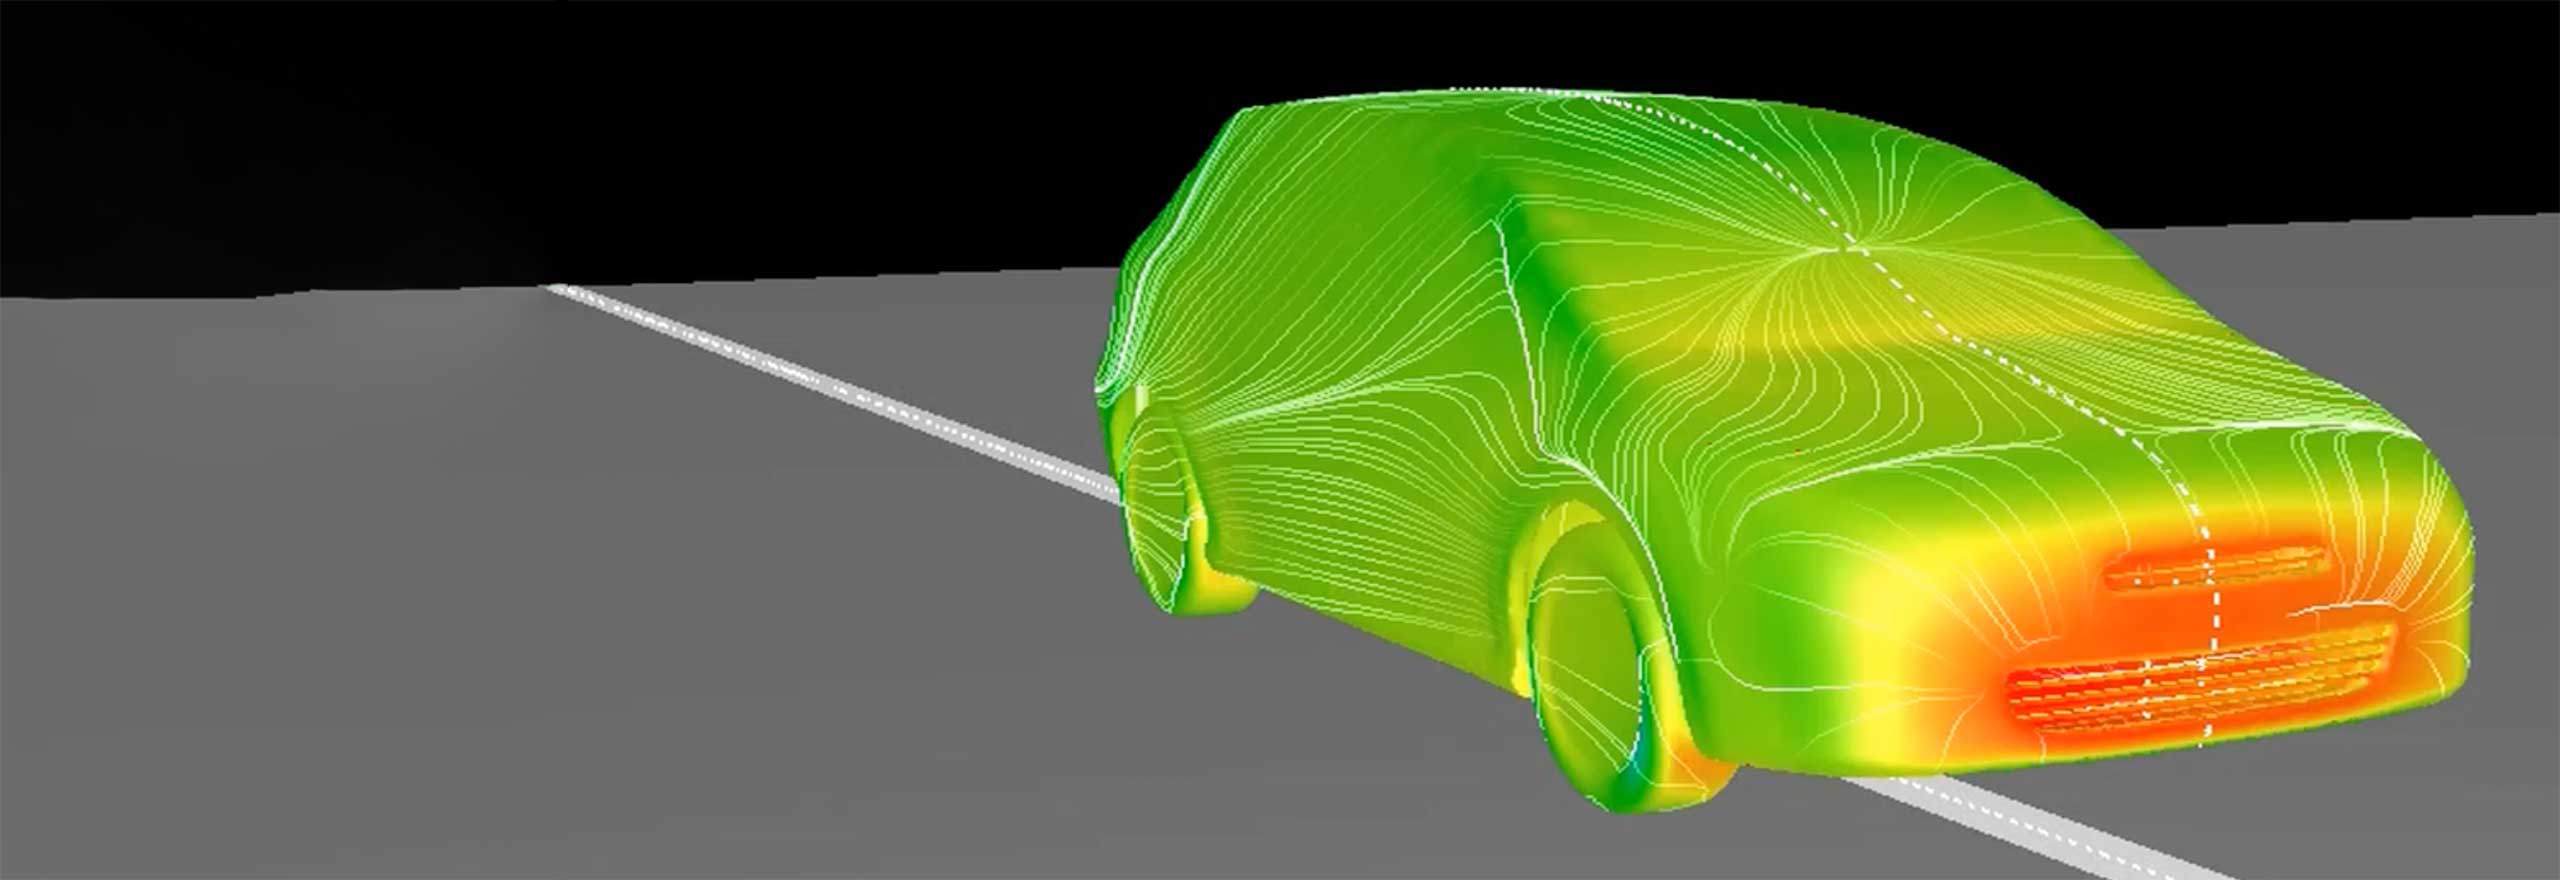 Multiphysikalische Co-Simulation mit Adams-scFLOW zur Vorhersage der dynamischen Bewegung der Fahrzeugaufhängung bei starkem Seitenwind